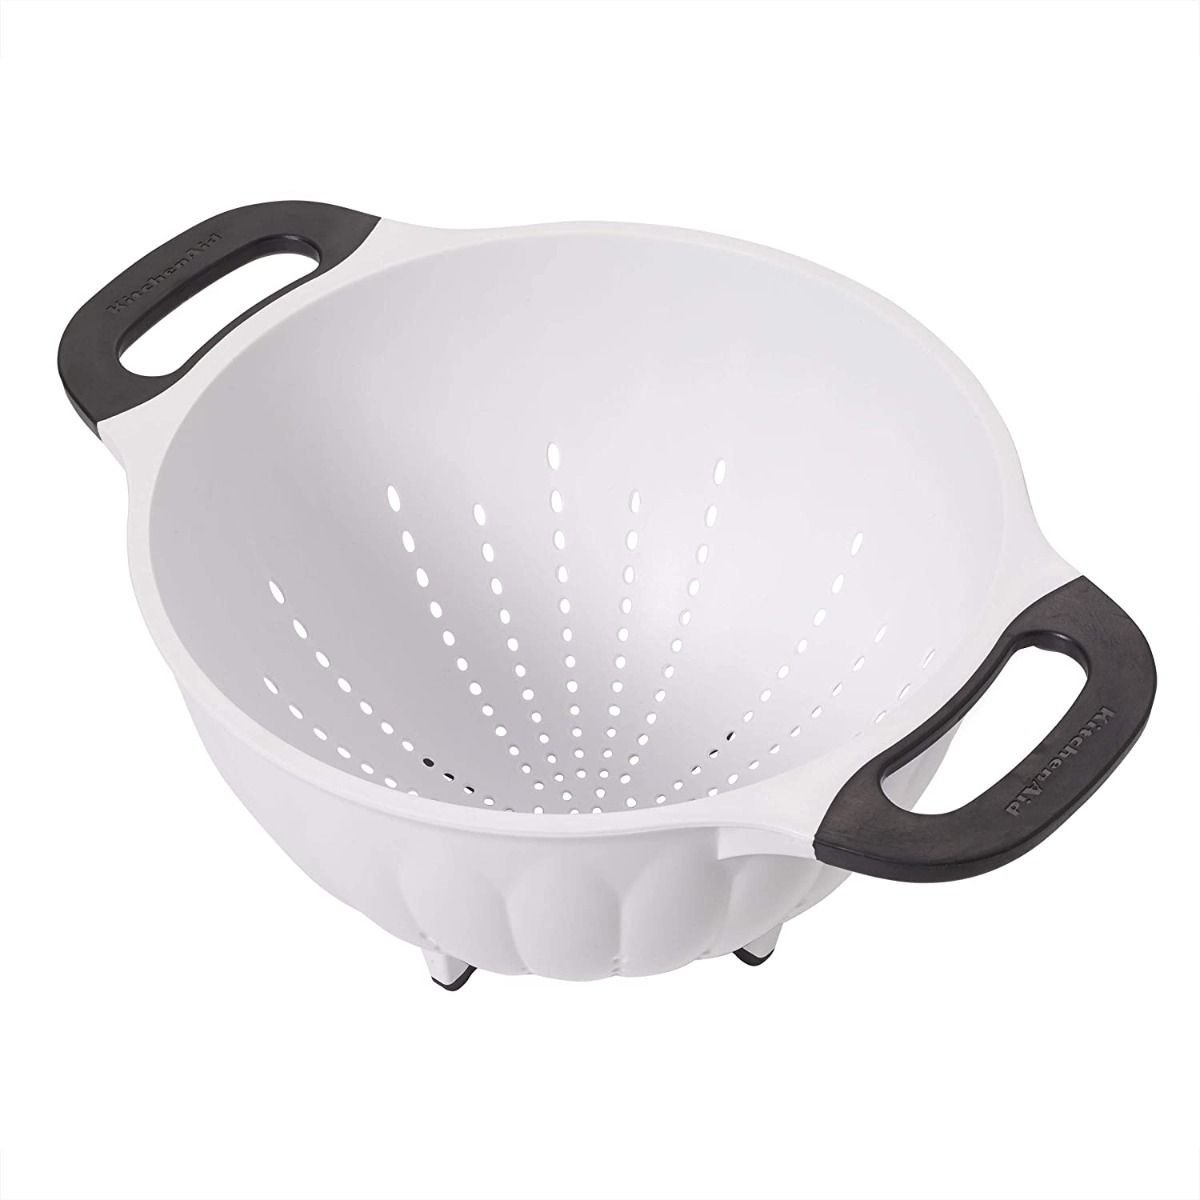 KitchenAid Universal 2 Quart Bowl Colander White